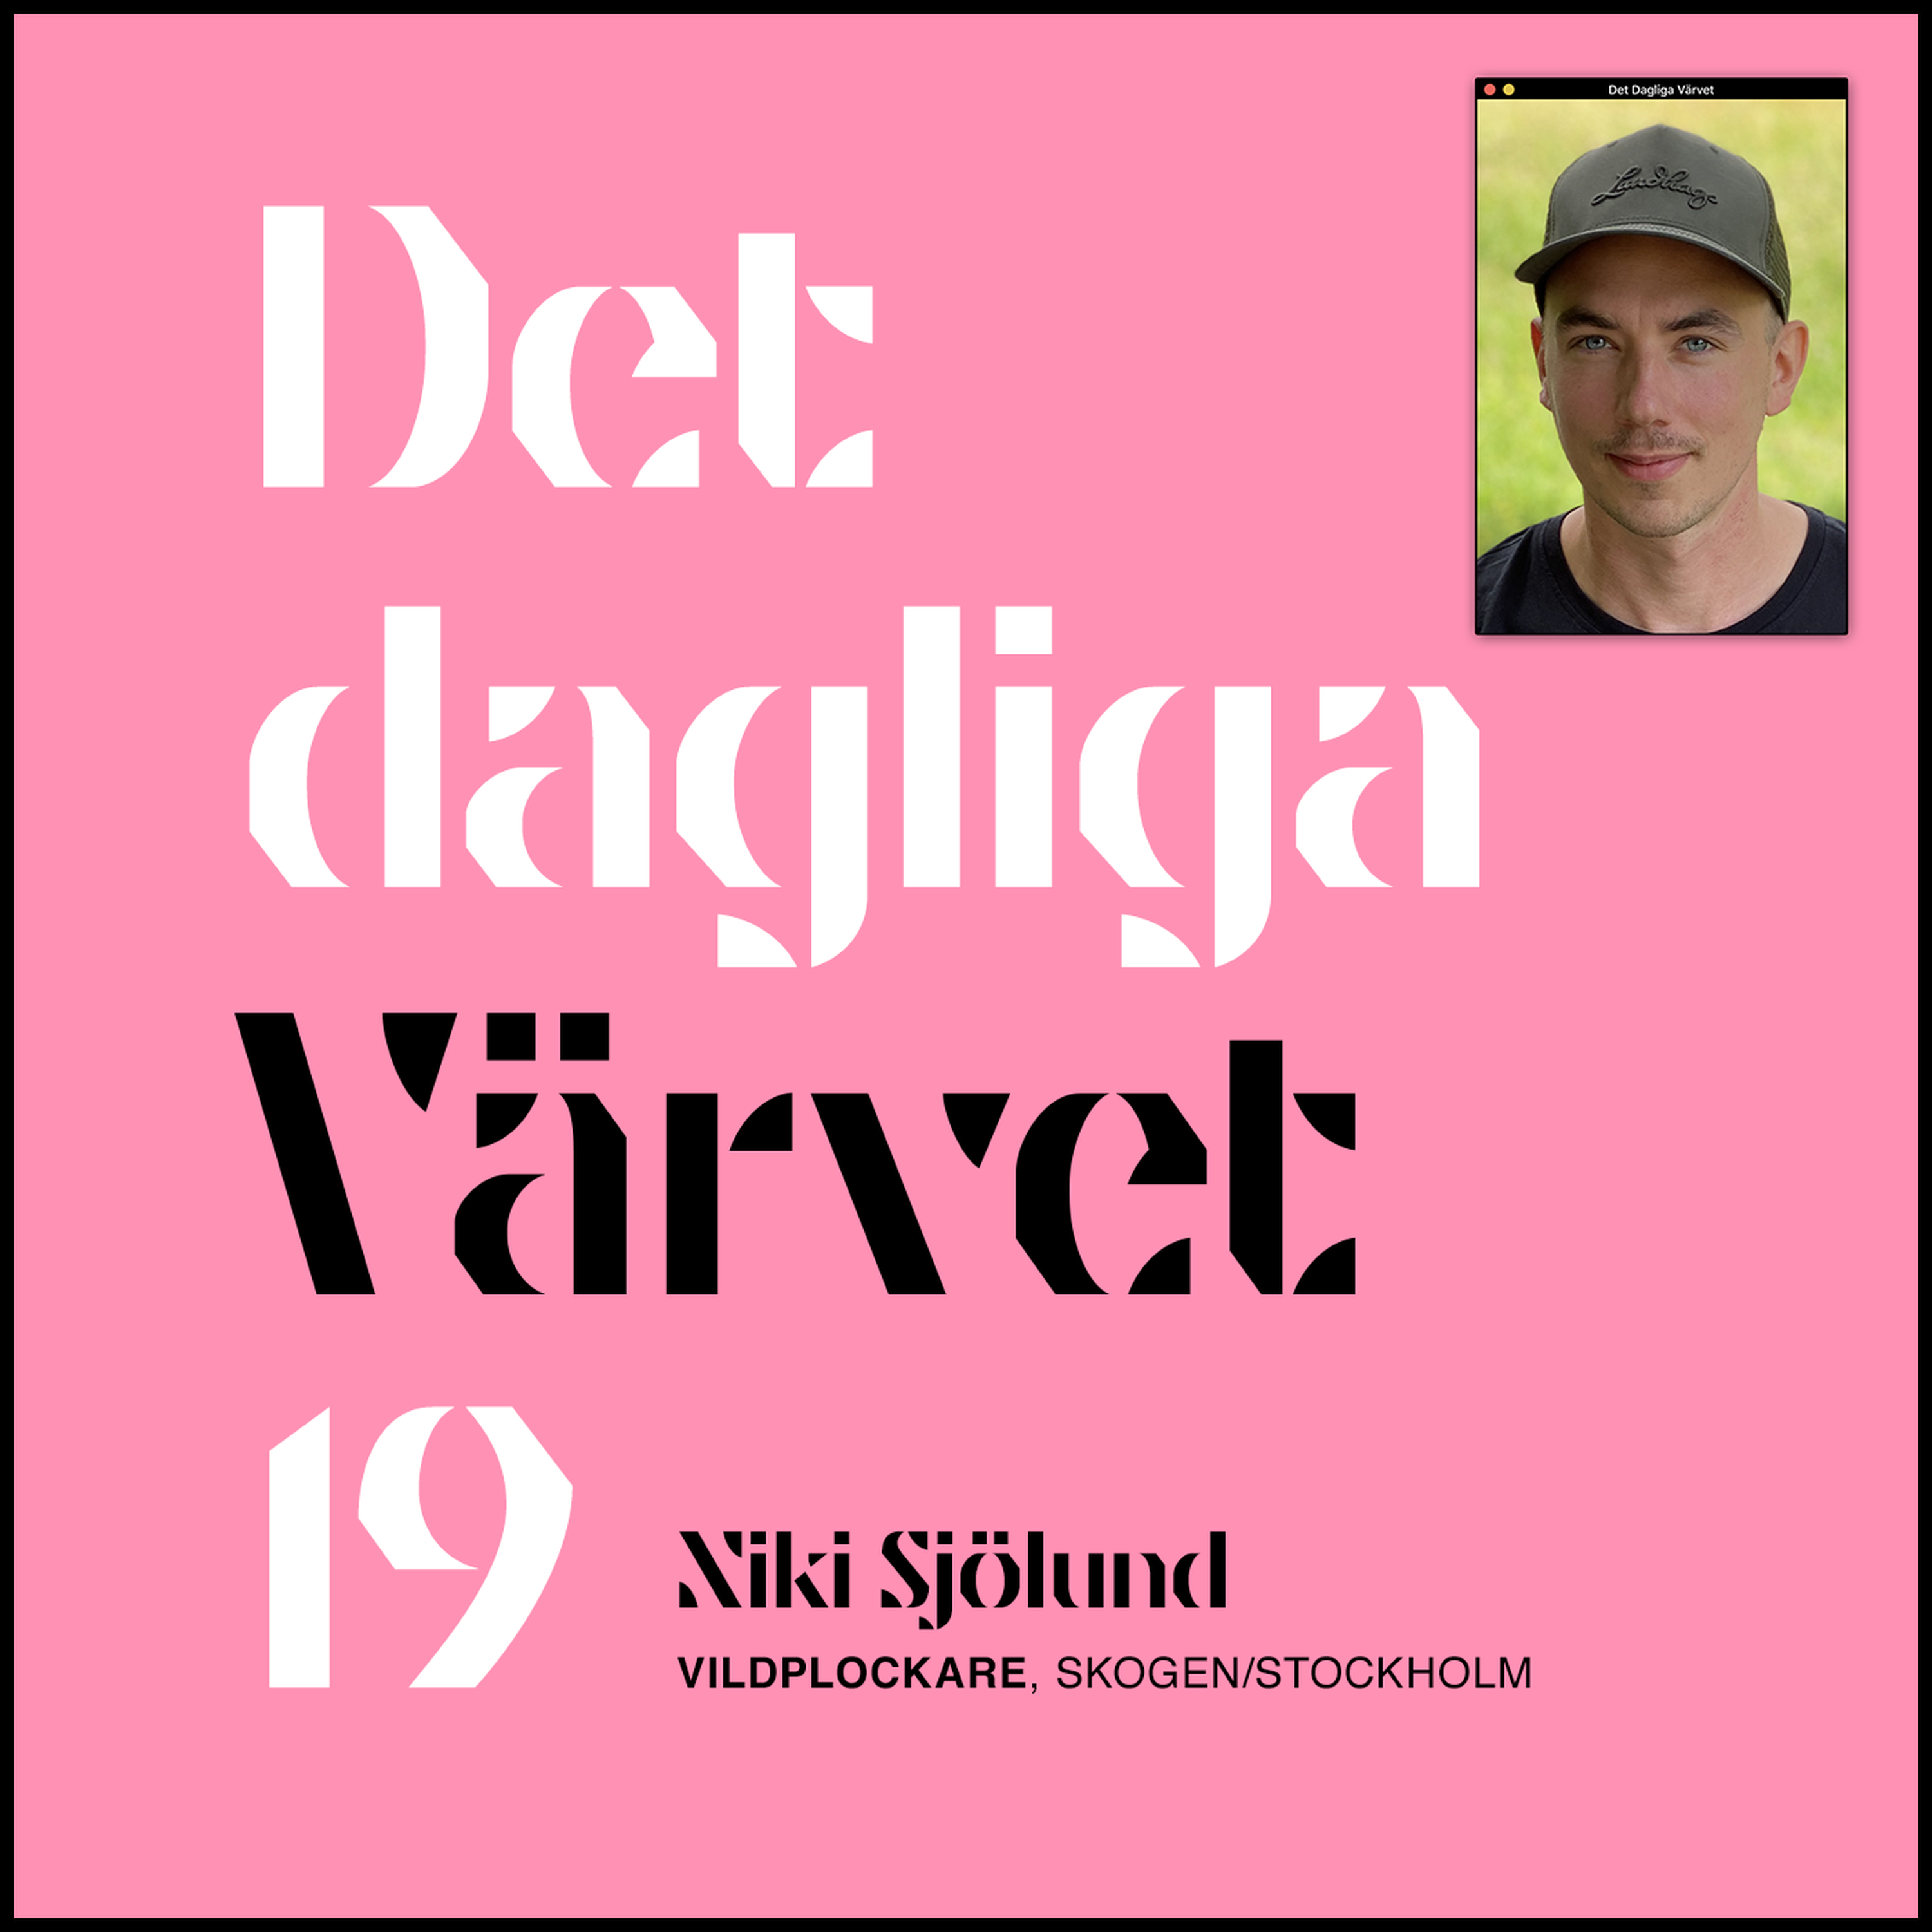 DET DAGLIGA VÄRVET #19 NIKI SJÖLUND